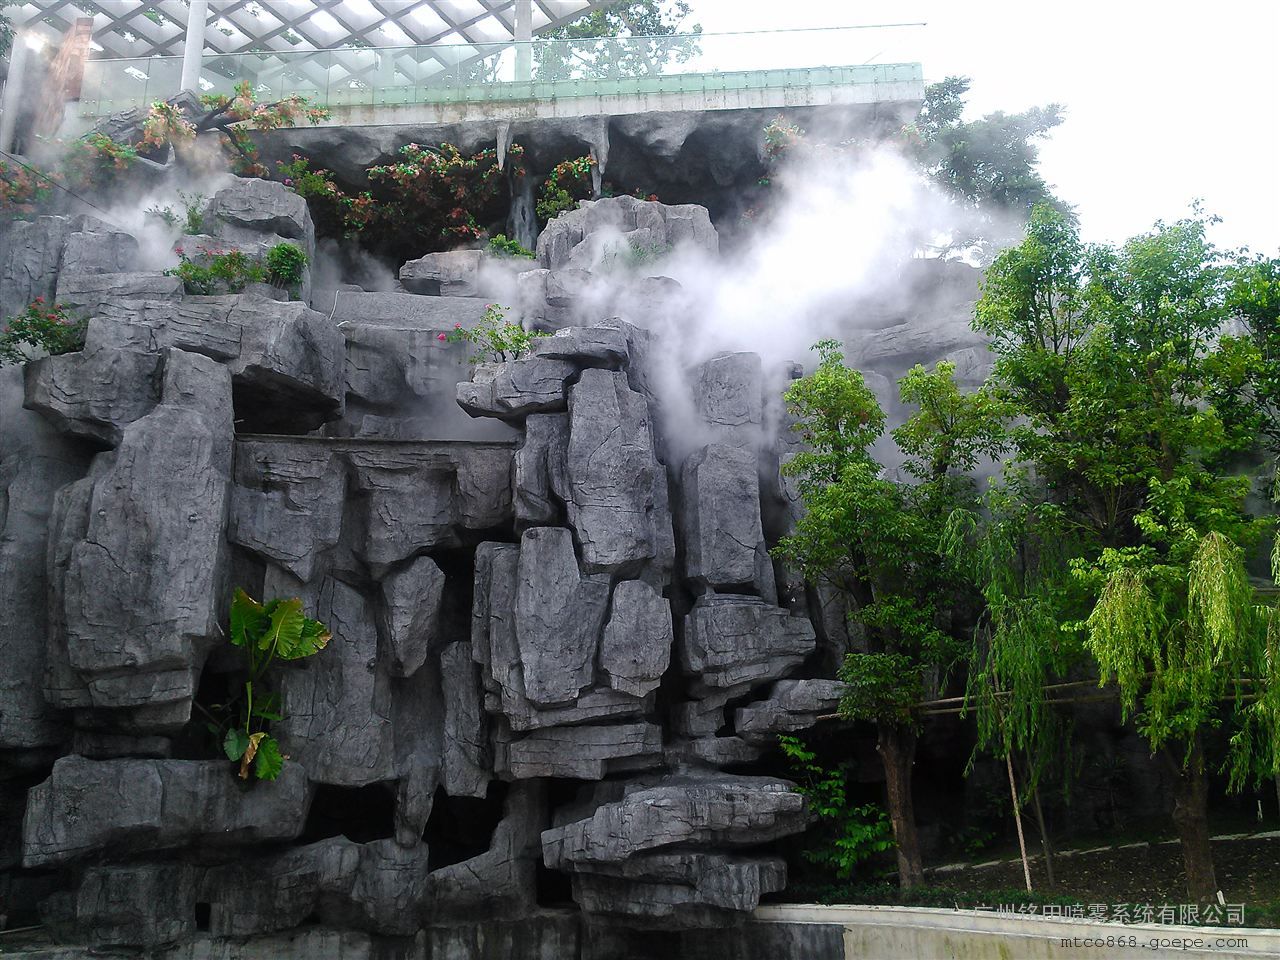 天津园林景观喷雾系统